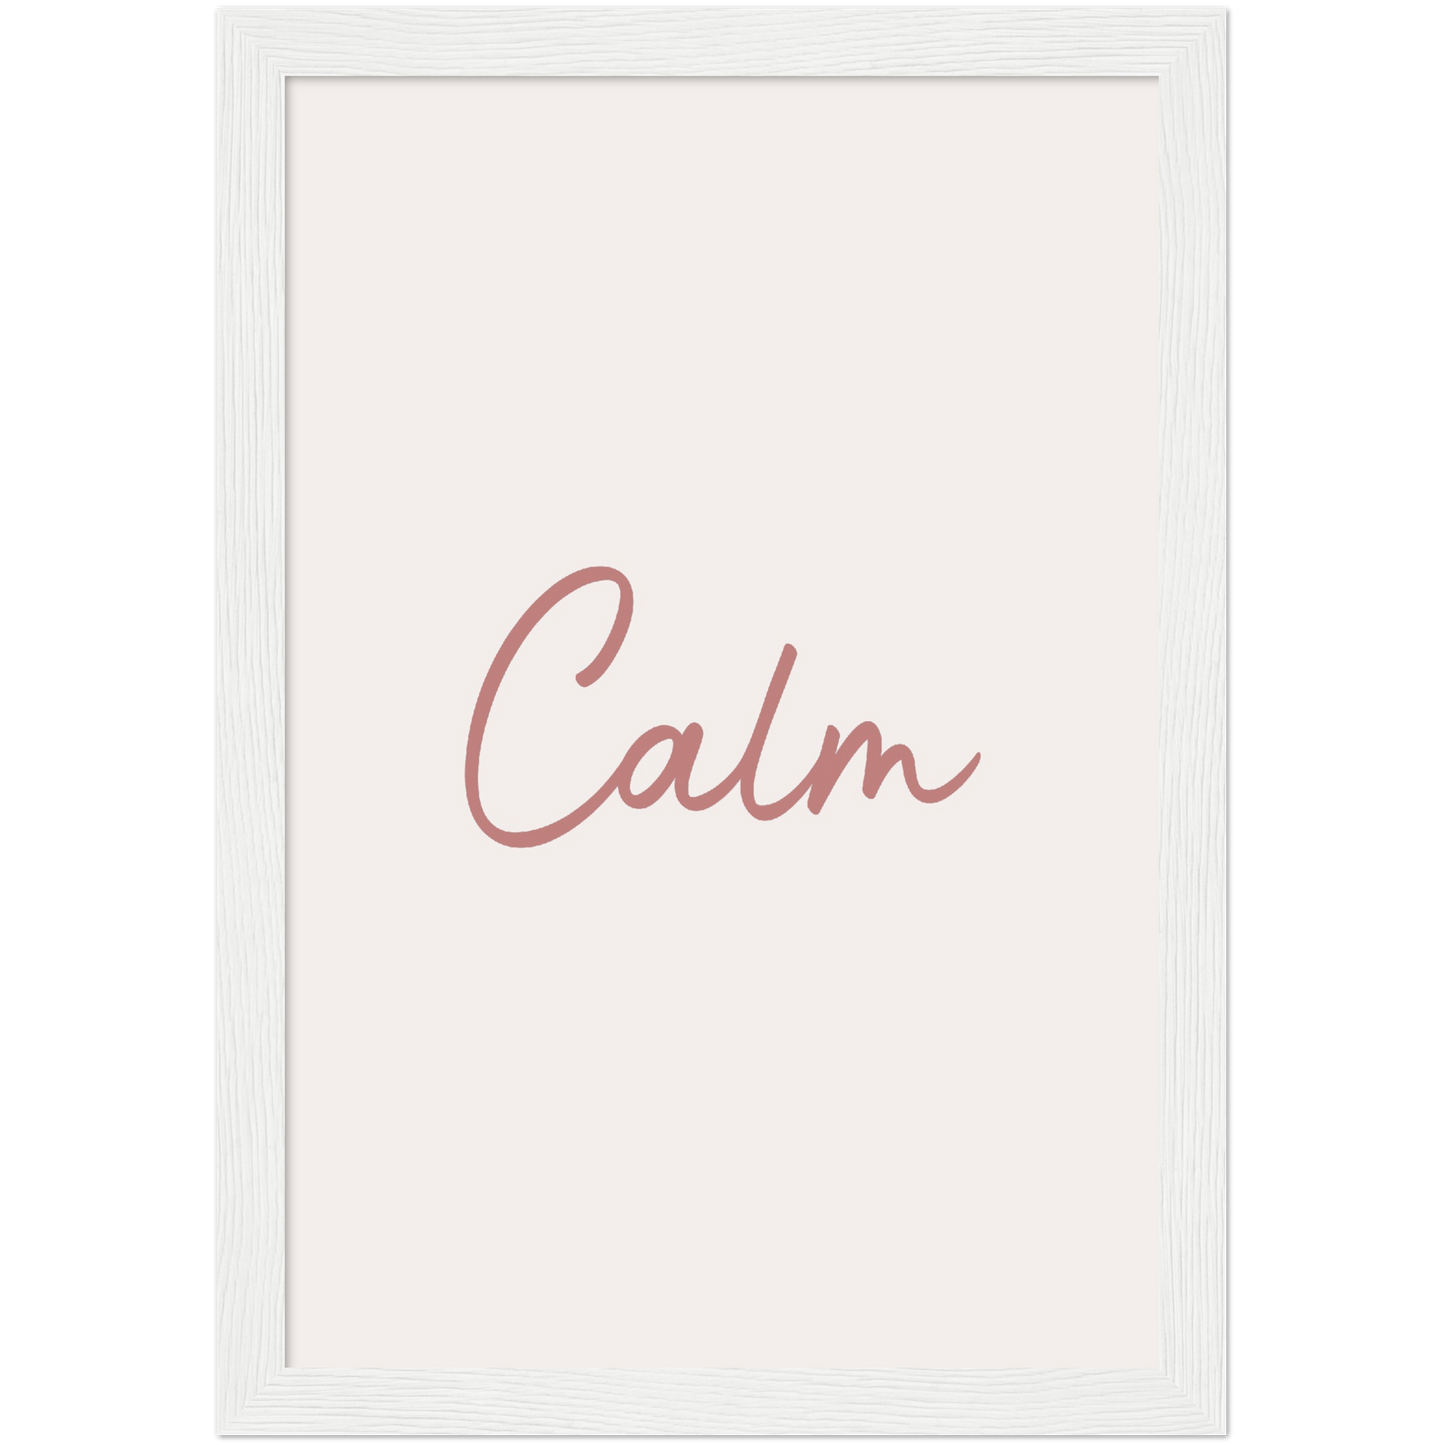 Calm Words - Melon Wooden Framed Poster Art Print